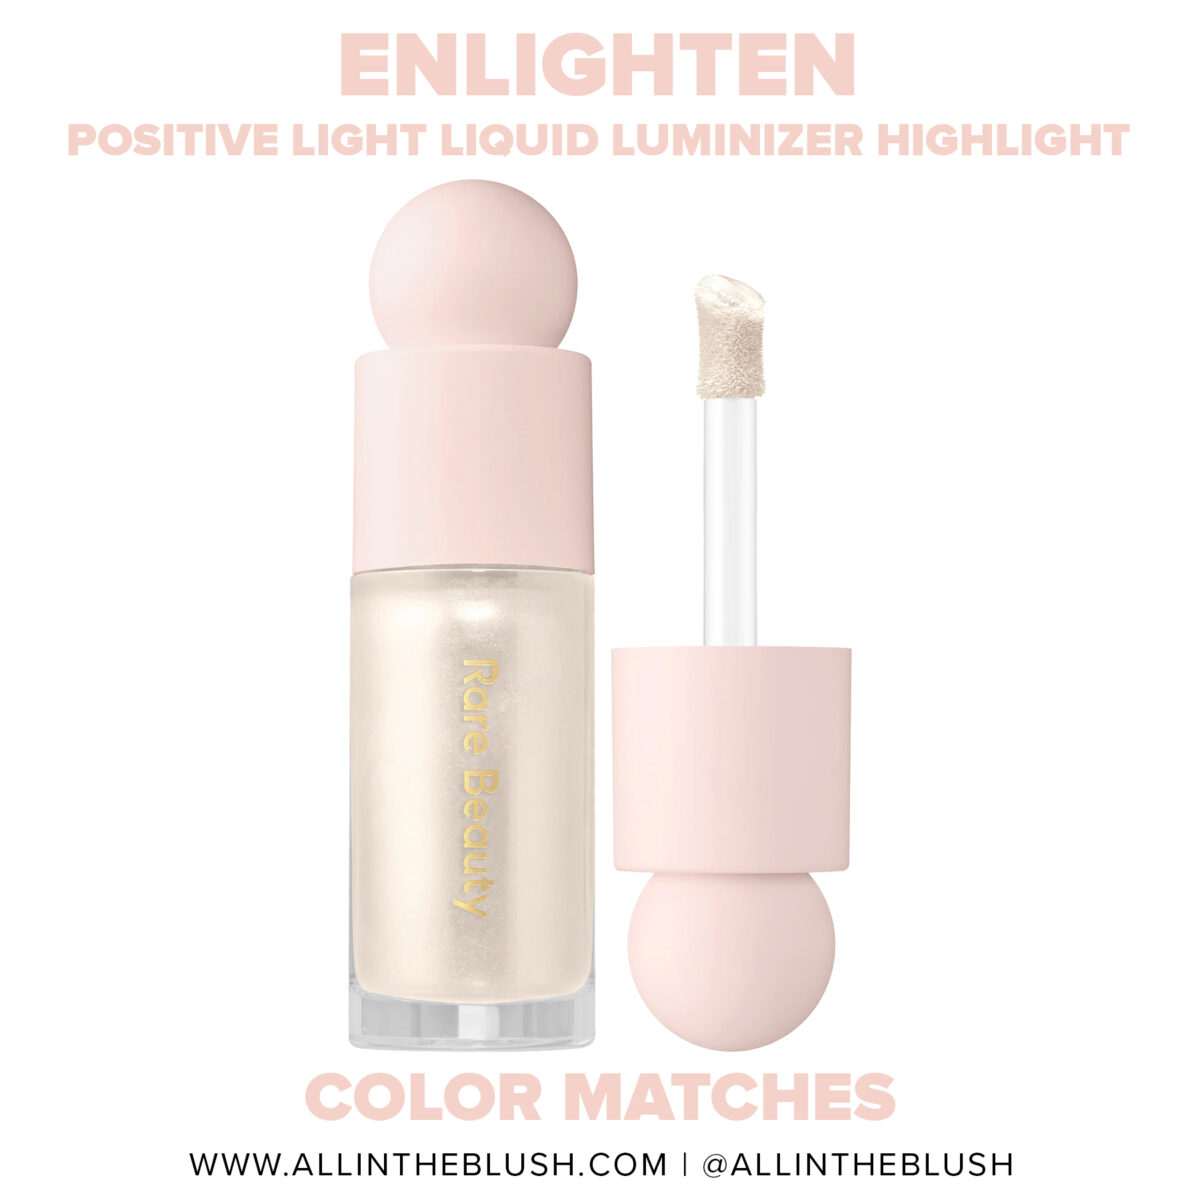 Rare Beauty Enlighten Positive Light Liquid Luminizer Highlight Color Matches